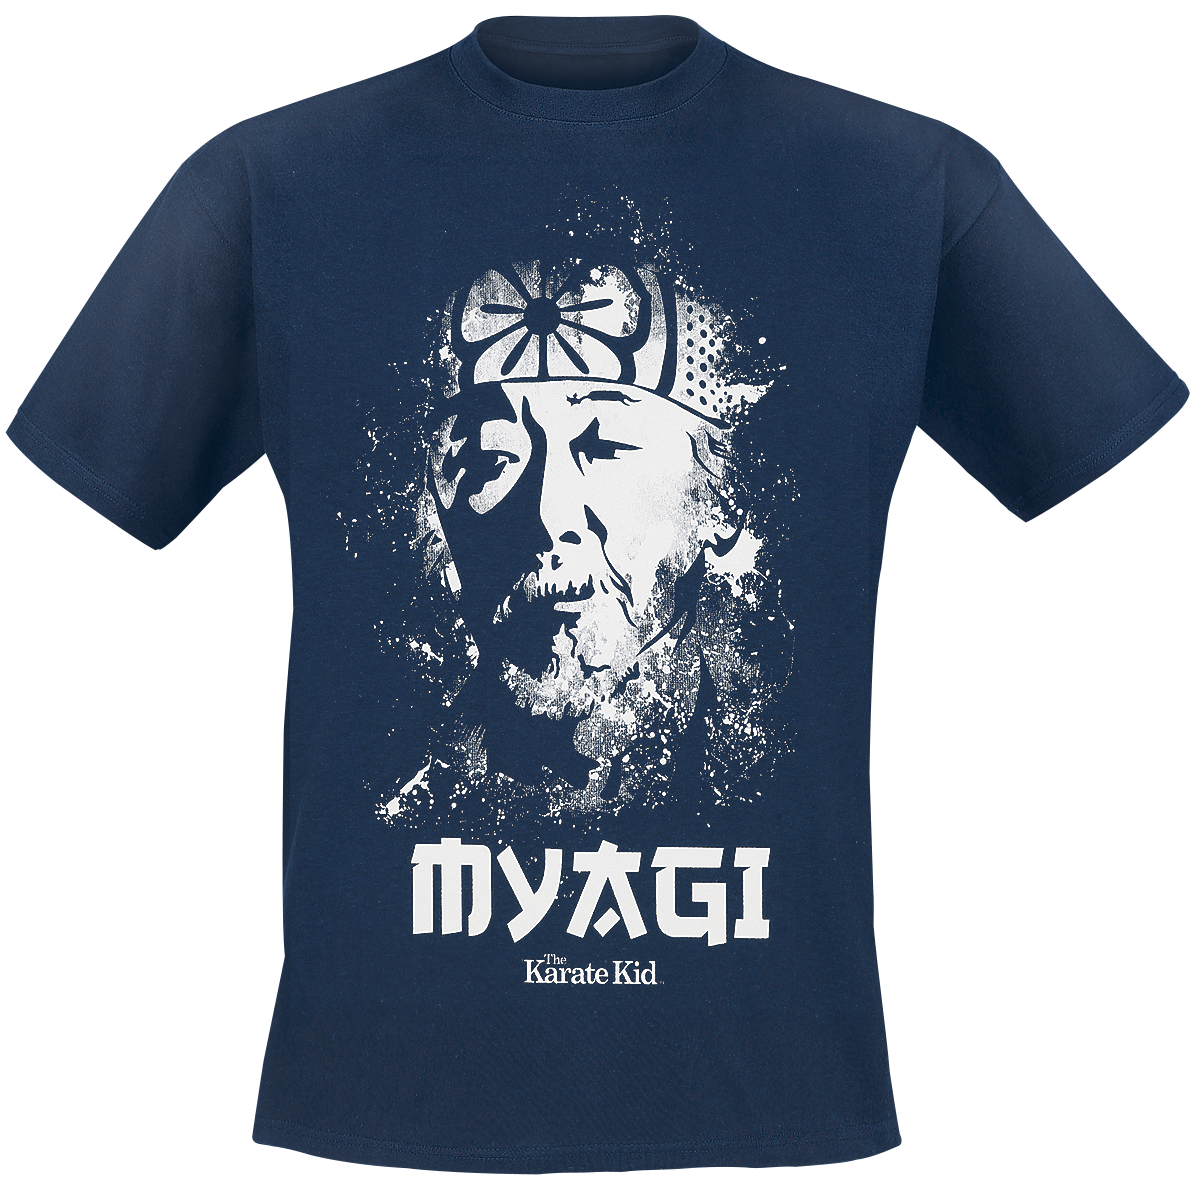 Karate Kid - Mr. Myagi - T-Shirt - blue image